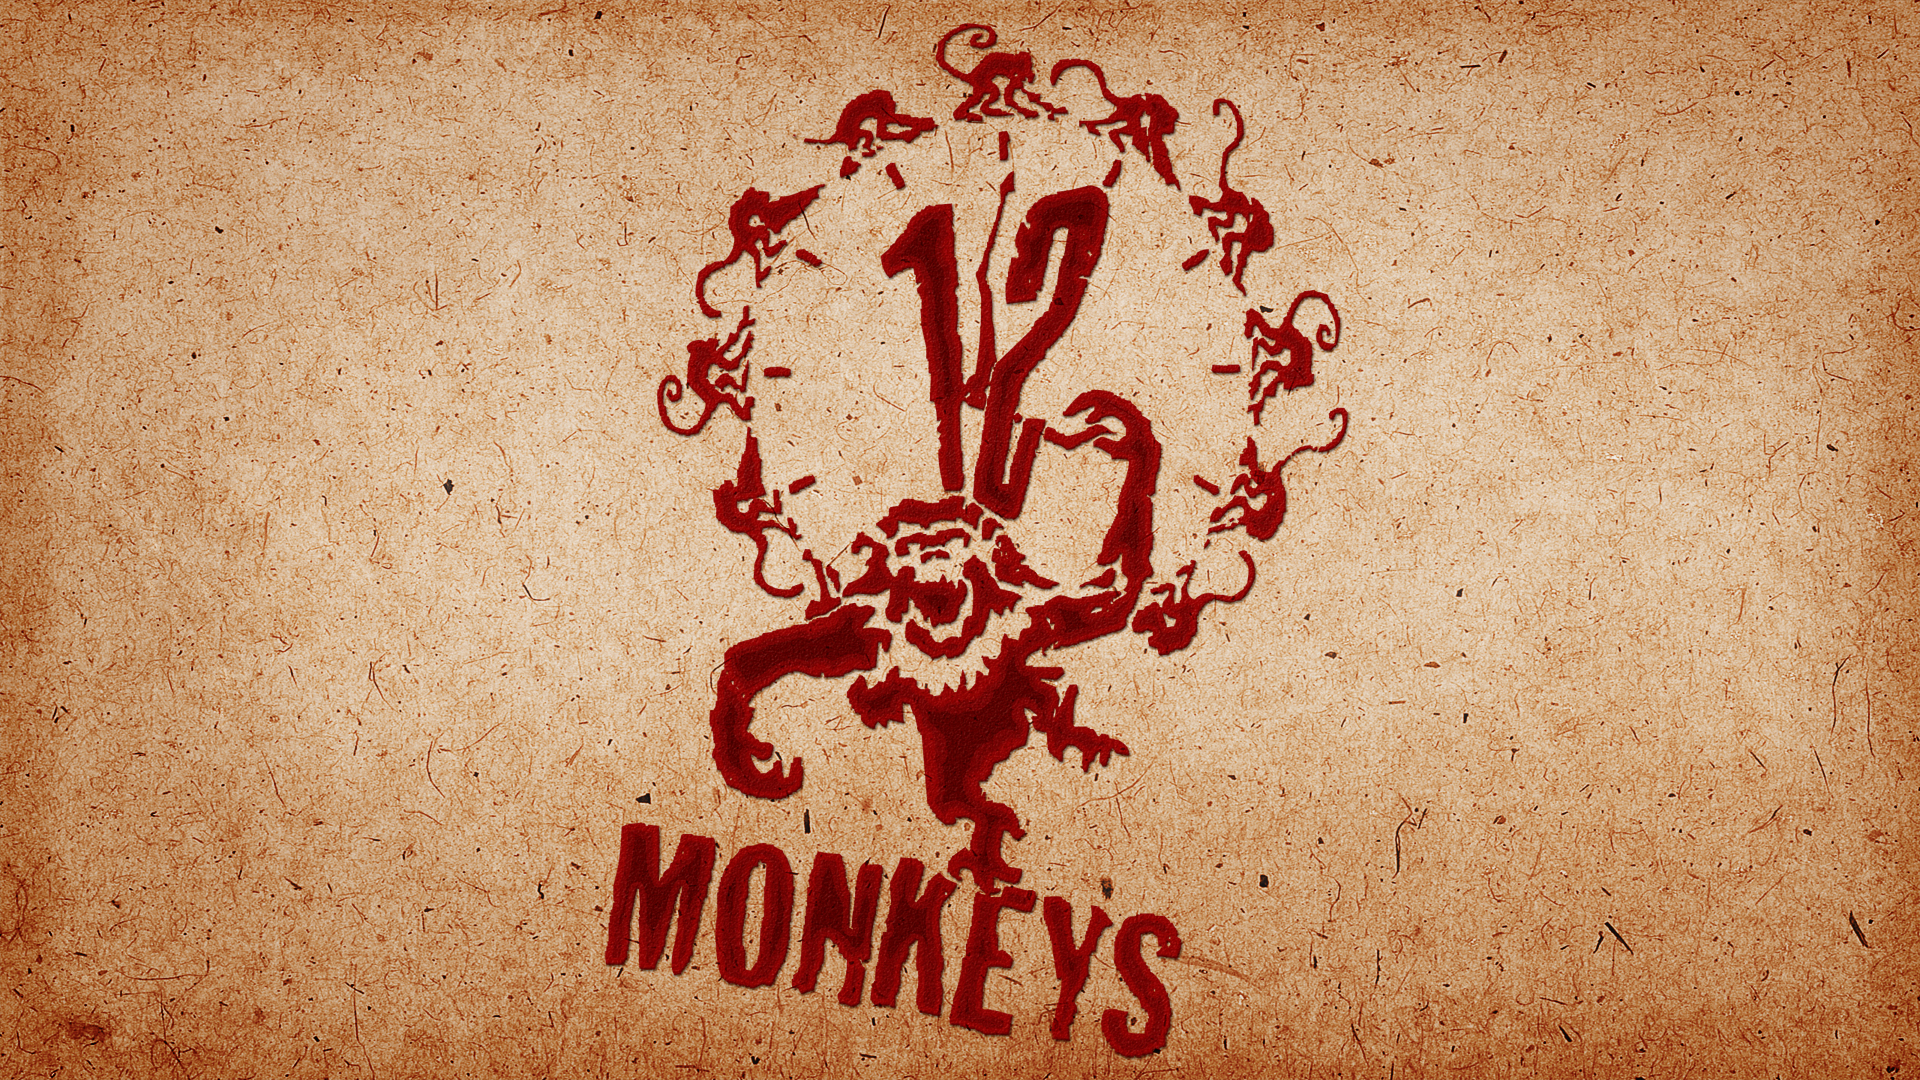 12 Monkeys Wallpapers